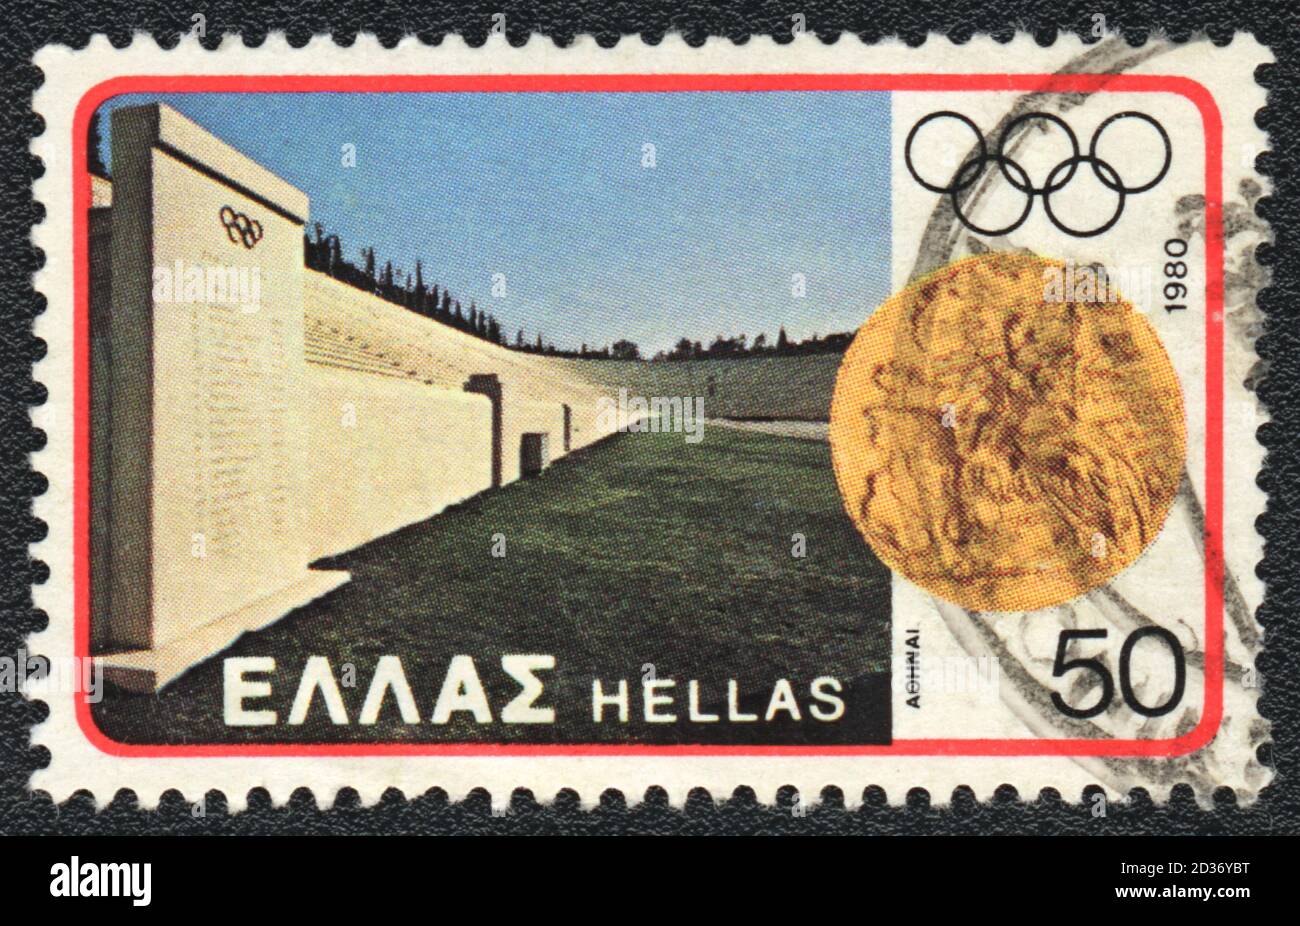 Timbre-poste imprimé en Grèce montre le stade olympique, 1980 Banque D'Images